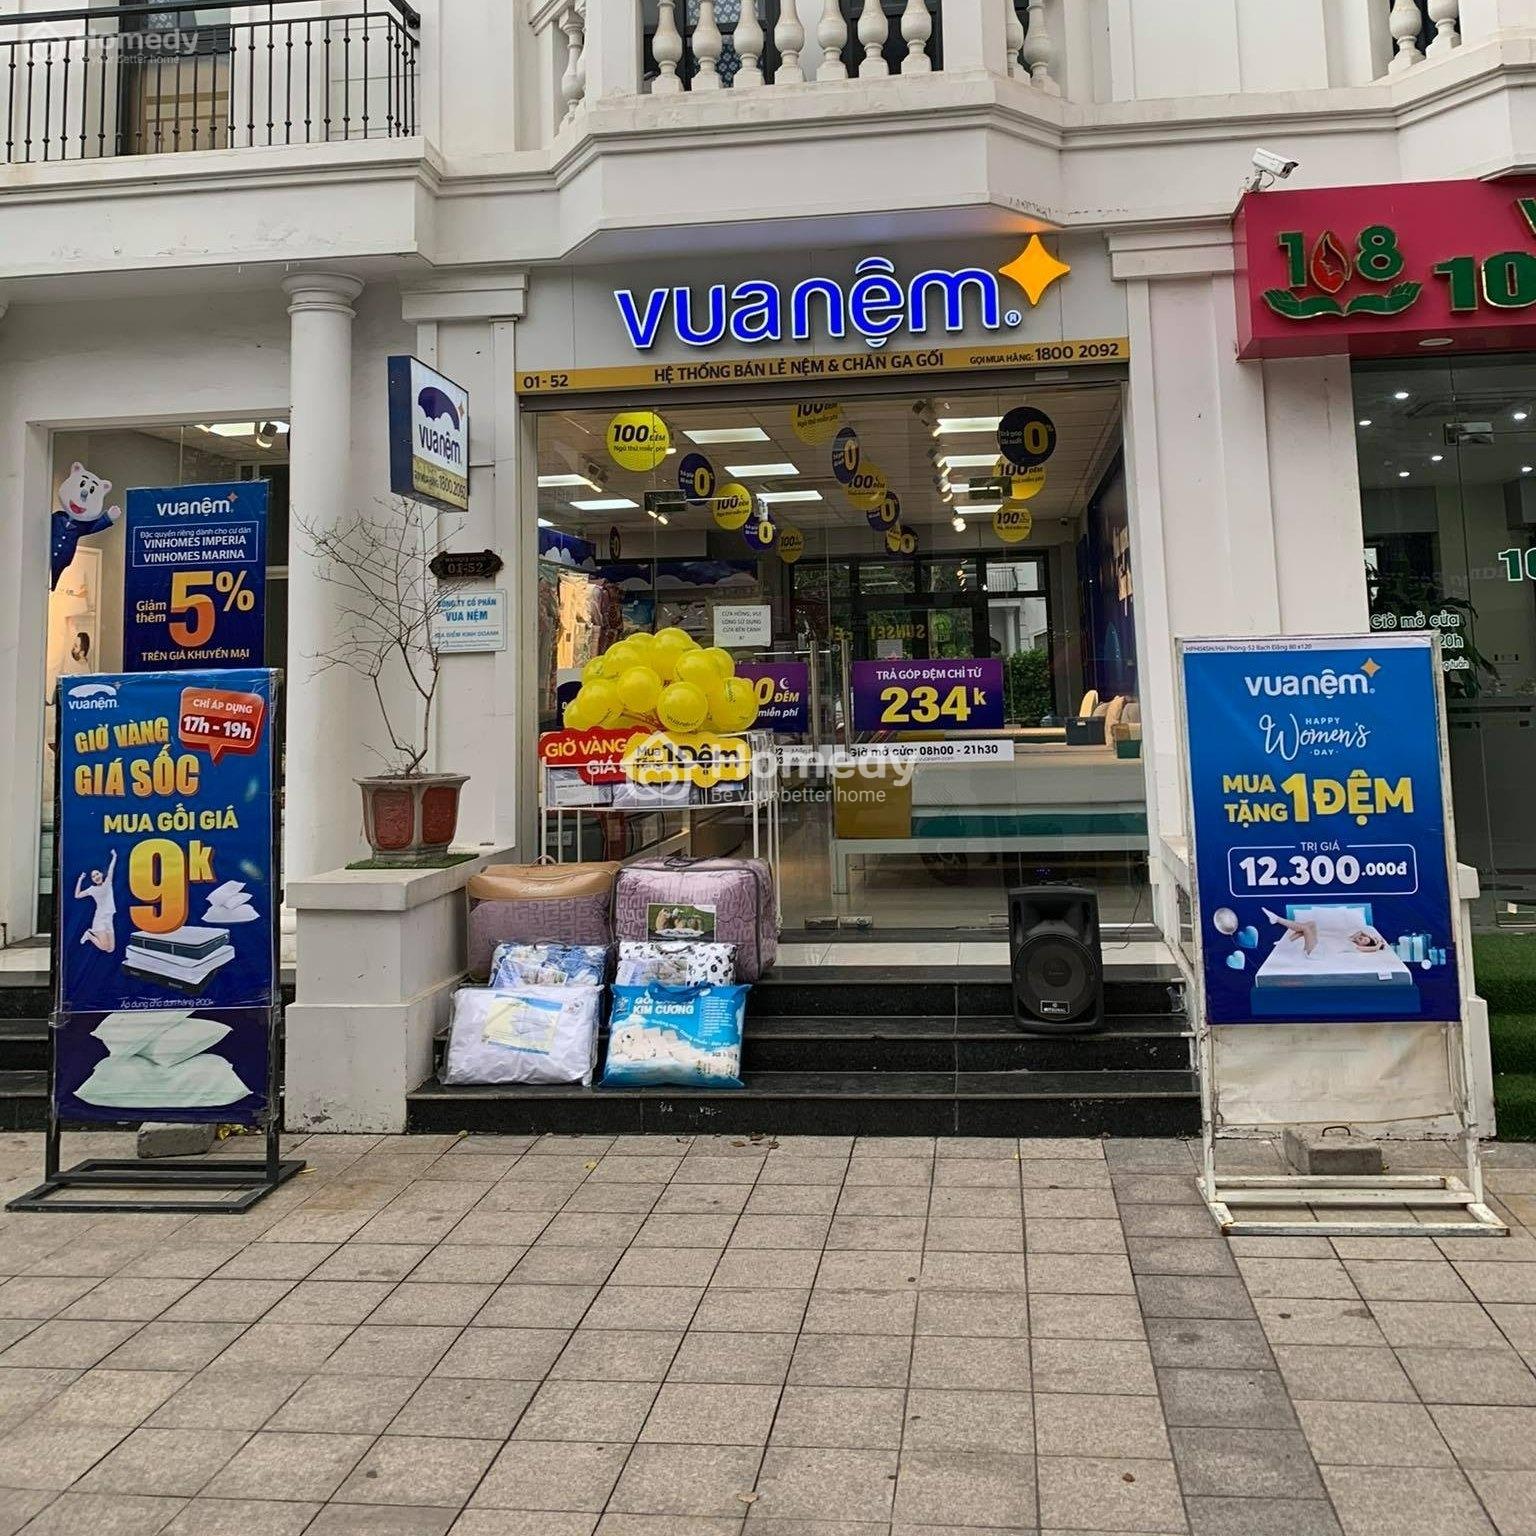 Cho Thuê Nhà Phố Thương Mại Shophouse Quận Hồng Bàng - Hải Phòng Giá 33.00 Triệu